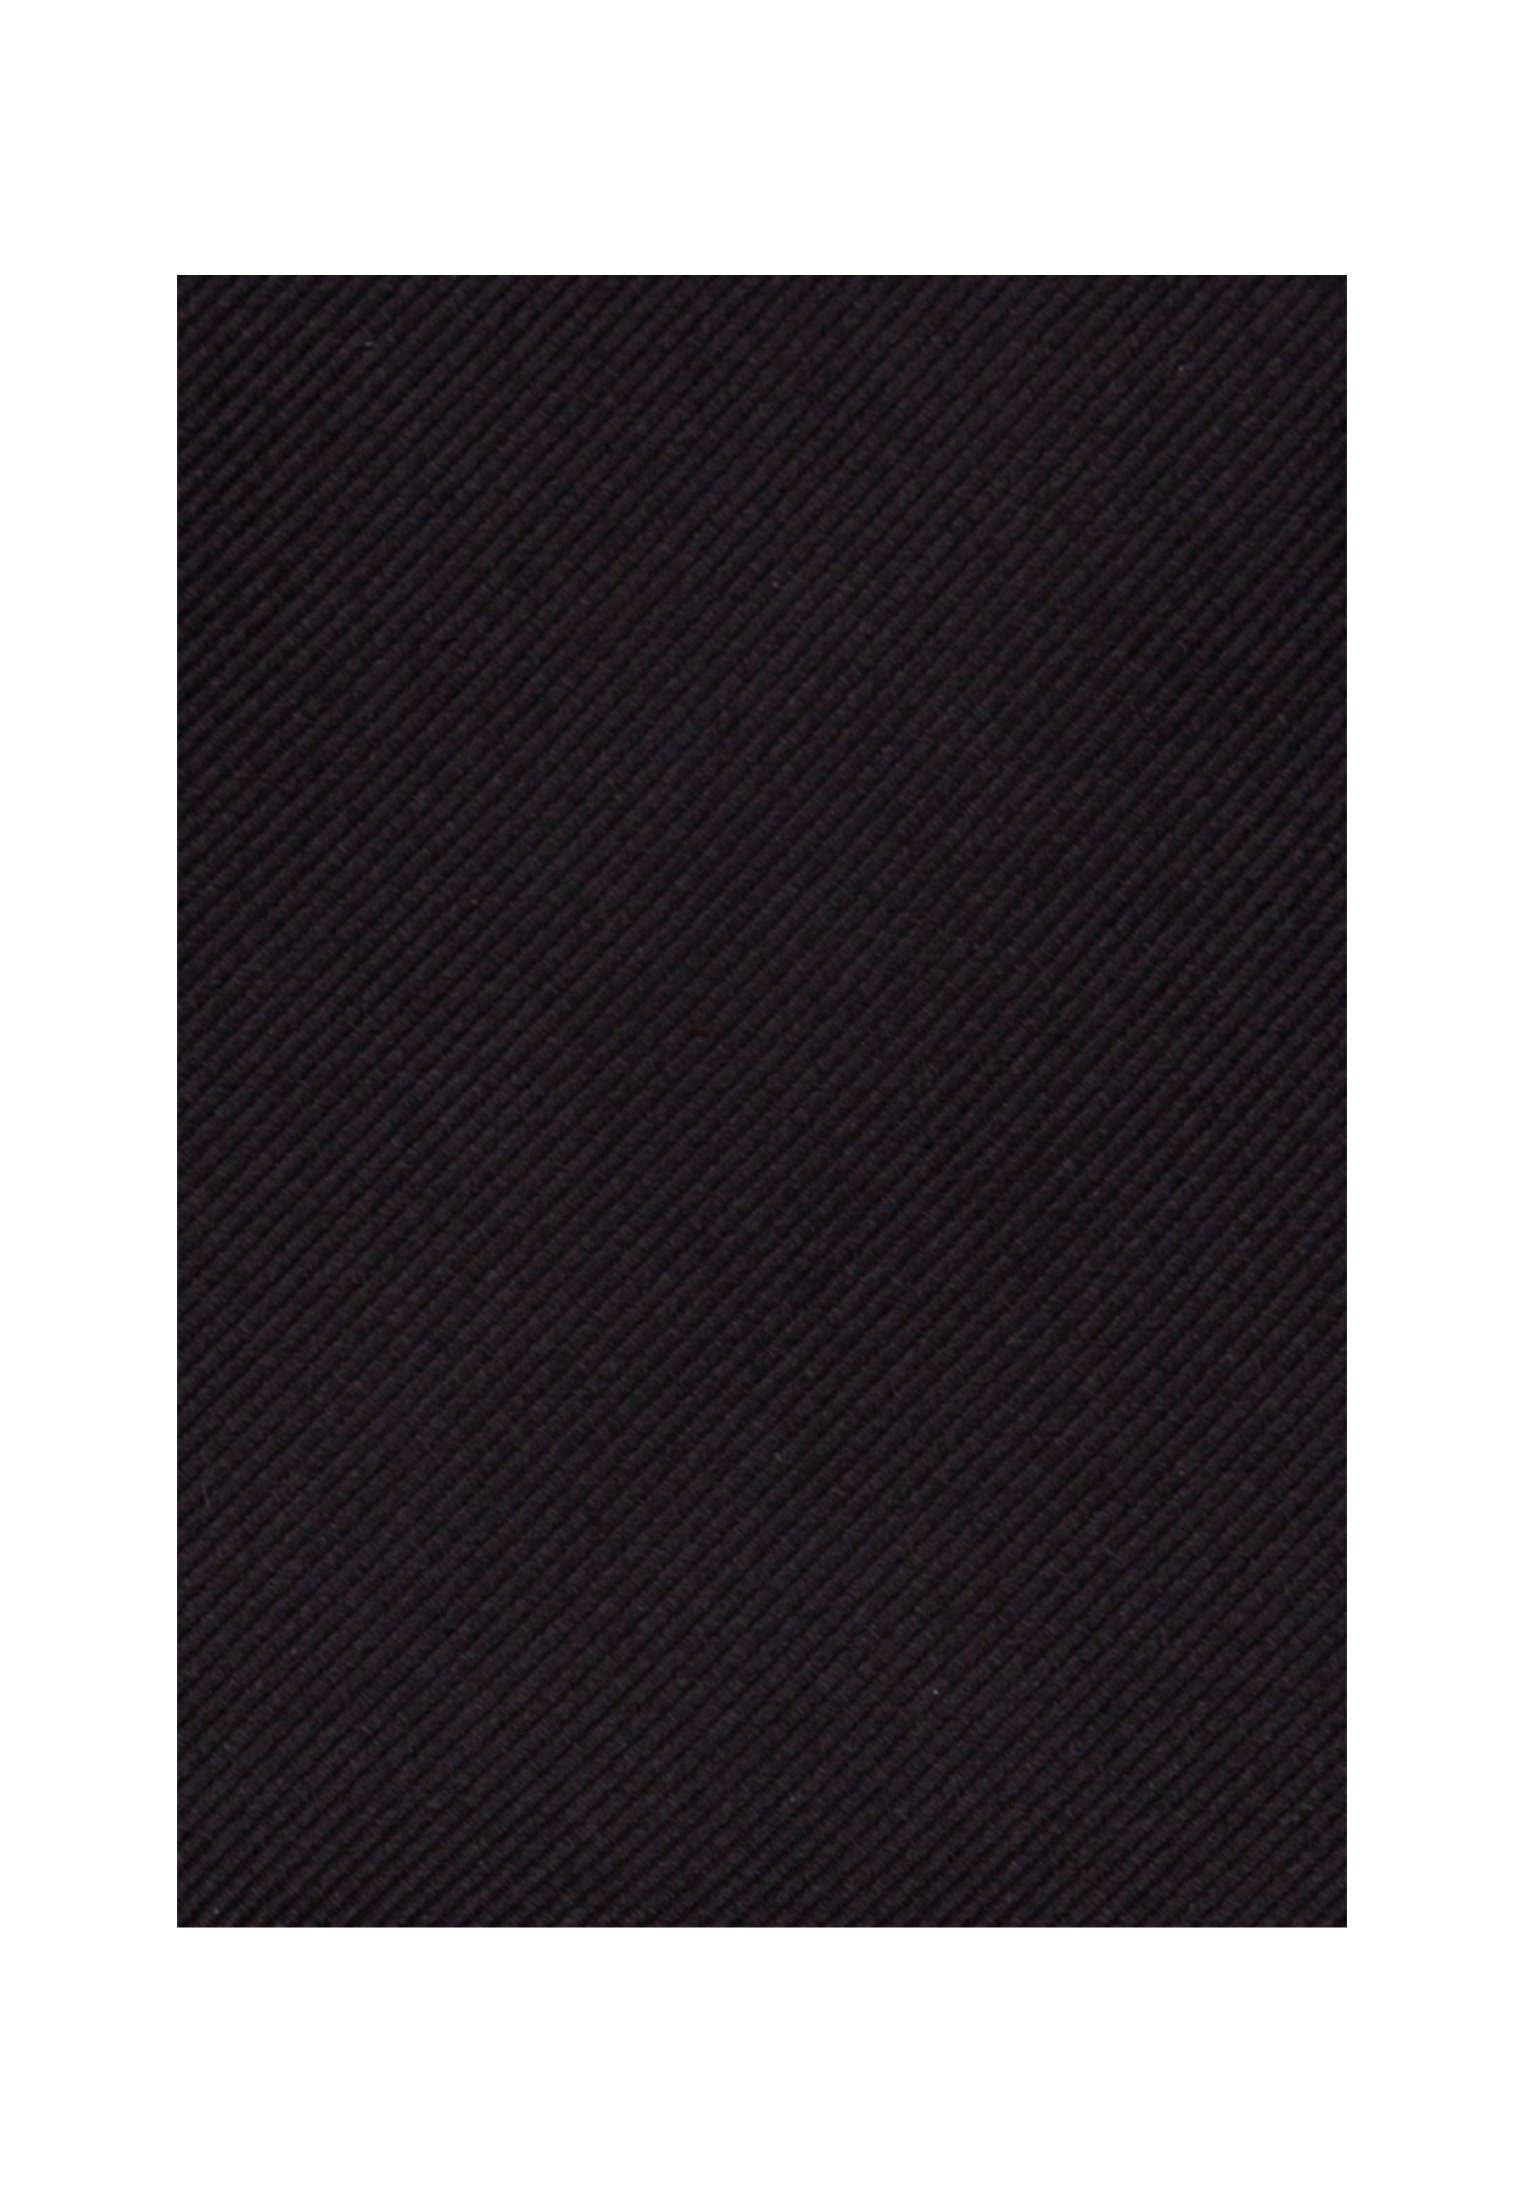 Schwarze Breit (7cm) Krawatte seidensticker Uni Grau Rose